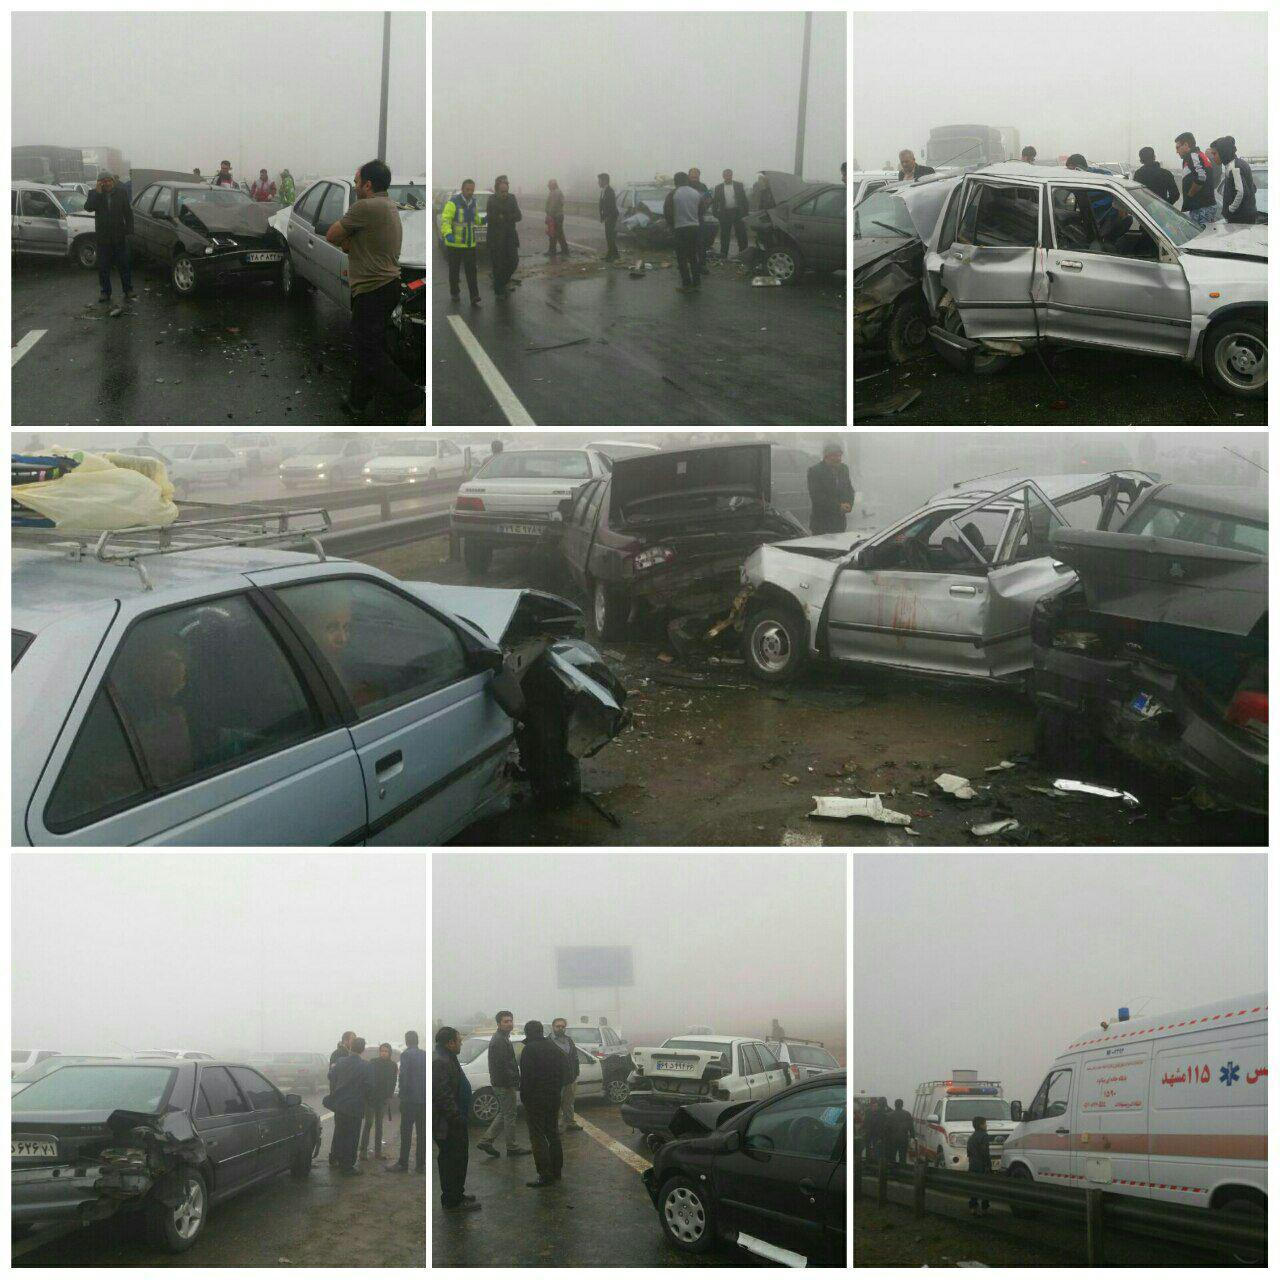   تصاویر وحشتناک از تصادف زنجیره ای 130 خودرو در مشهد 